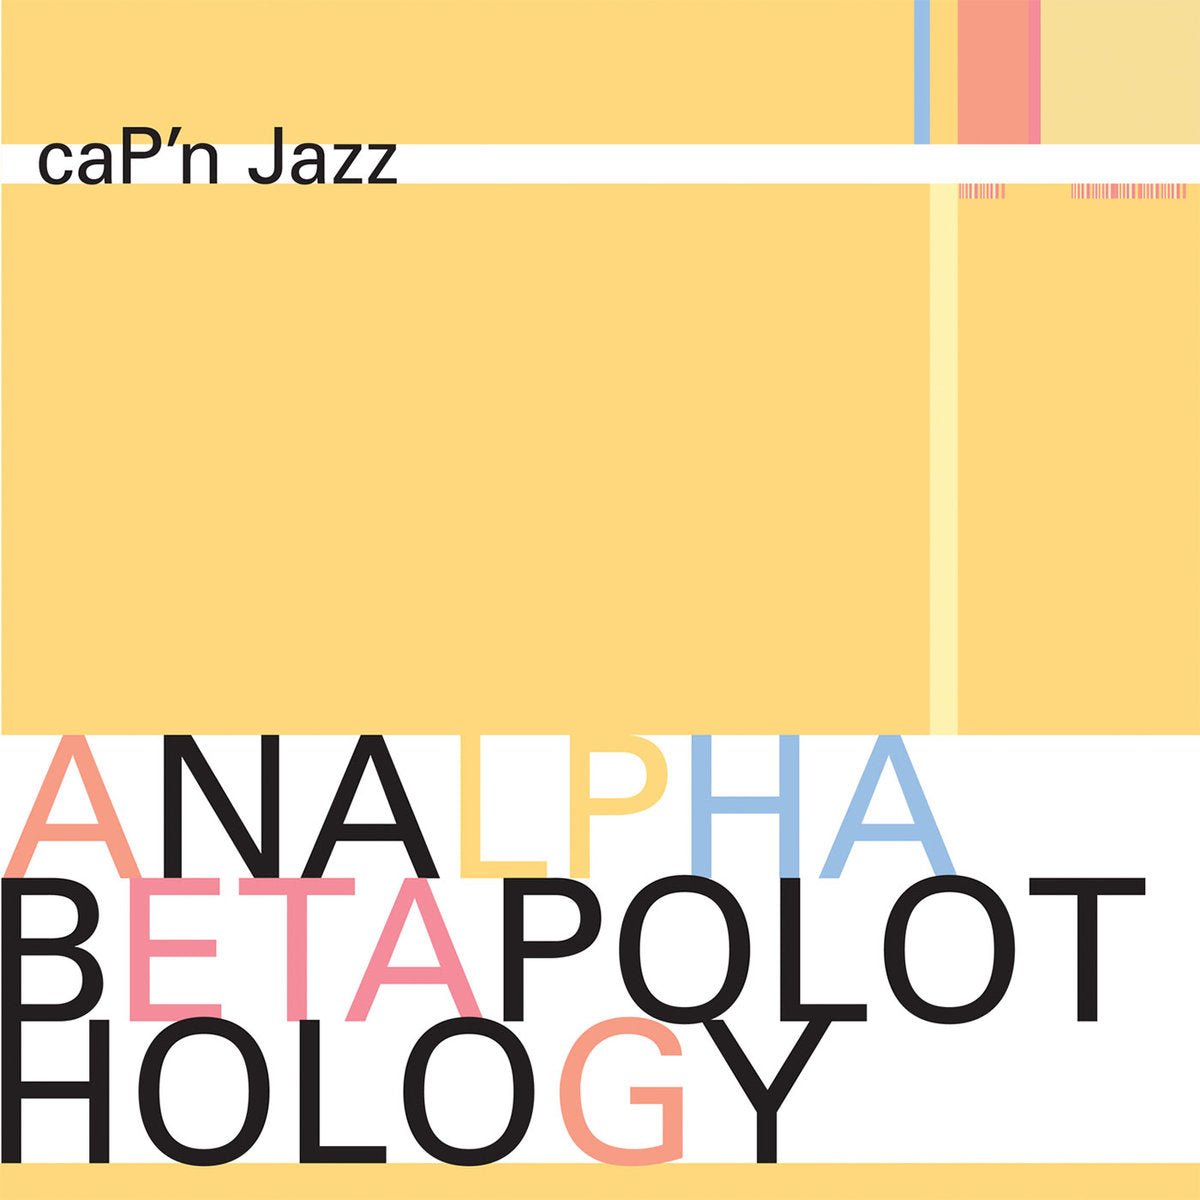 Cap'n Jazz: Analphabetapolothology: 2 LP 180g Black Vinyl - Steadfast Records